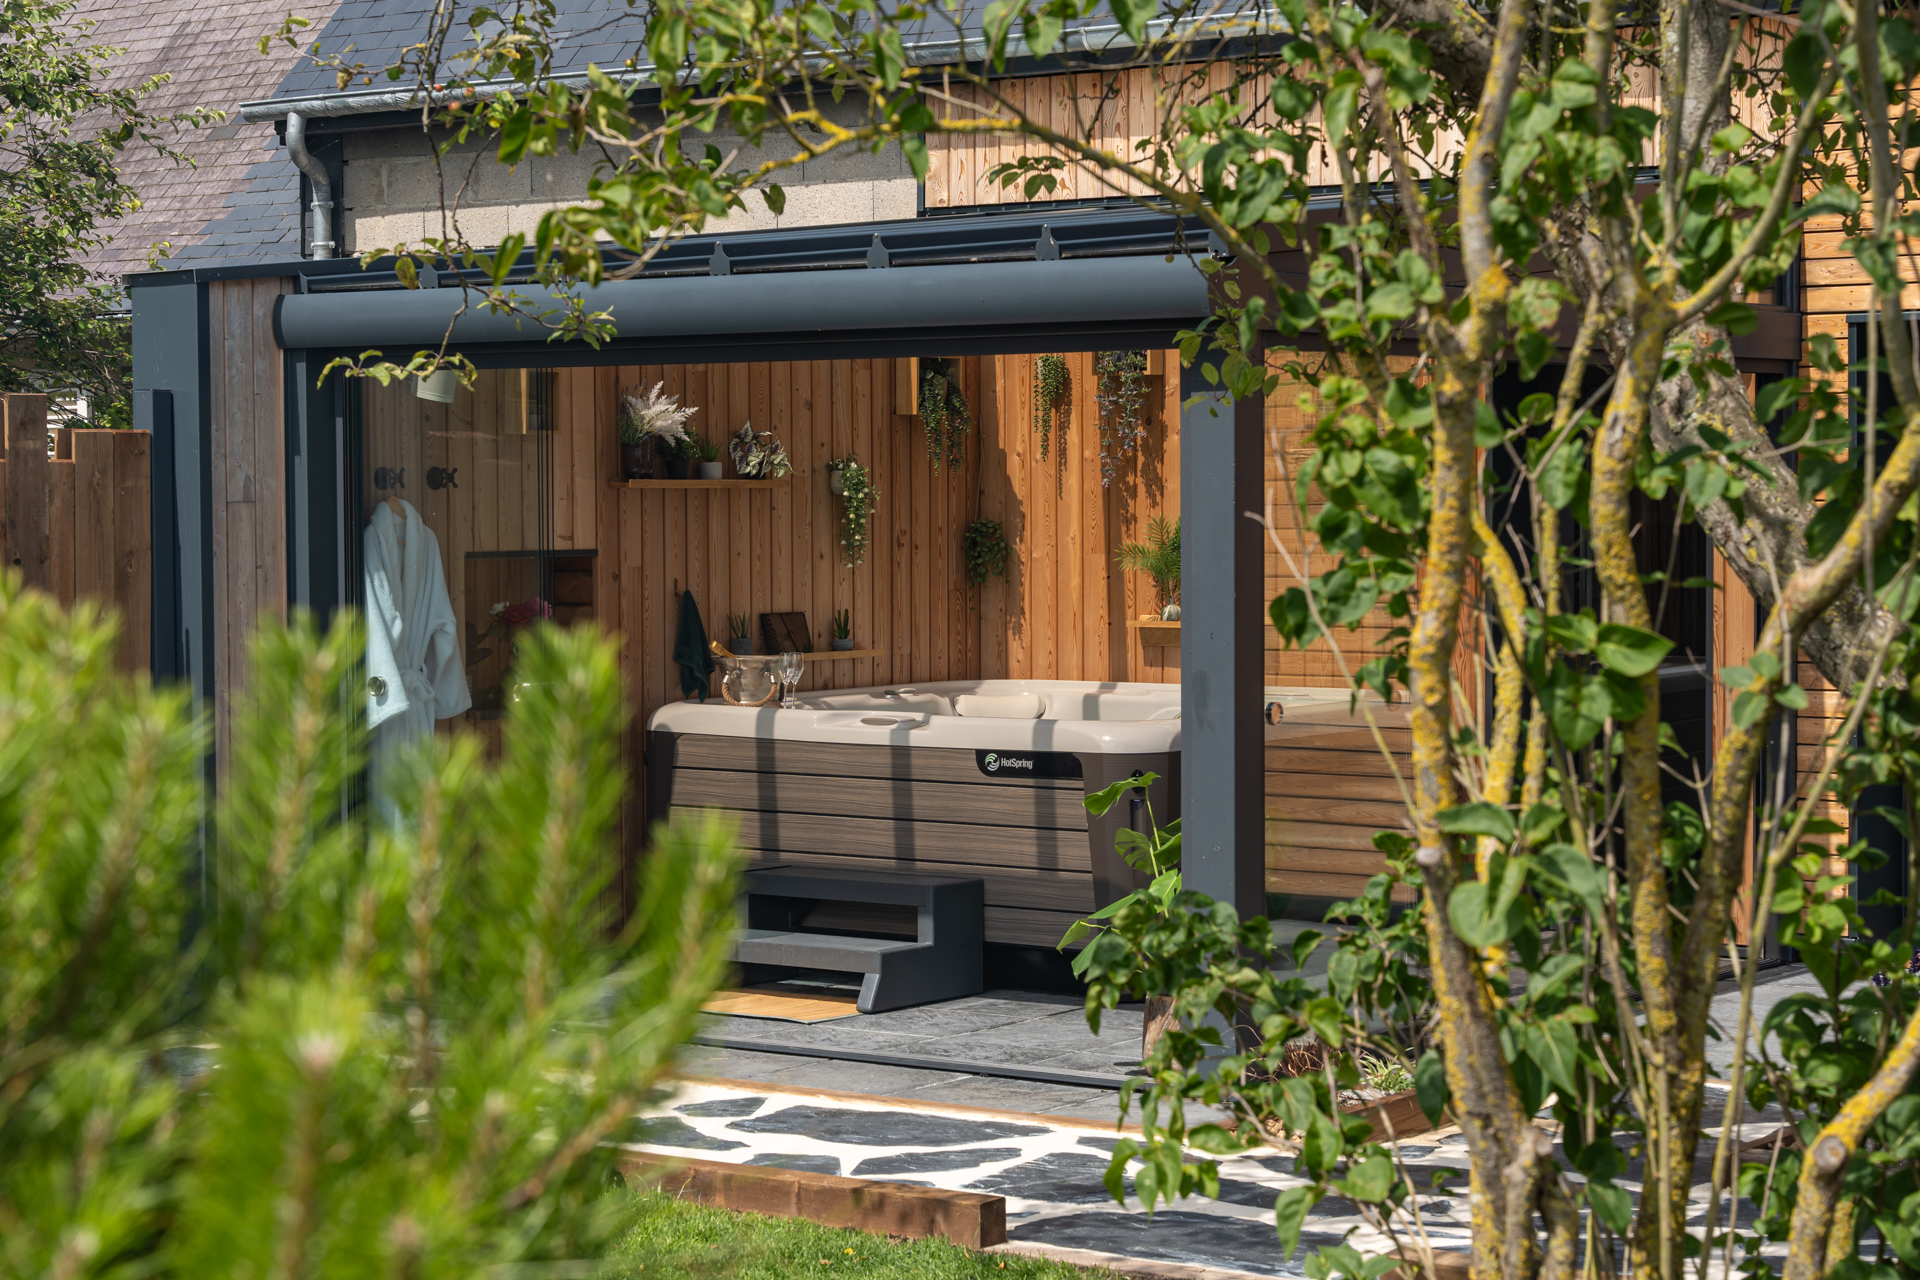 Véranda avec jacuzzi spa privatif calme relaxant week-end vacance couple famille terrasse domaine de la mer Woignarue jardin extérieur terrasse